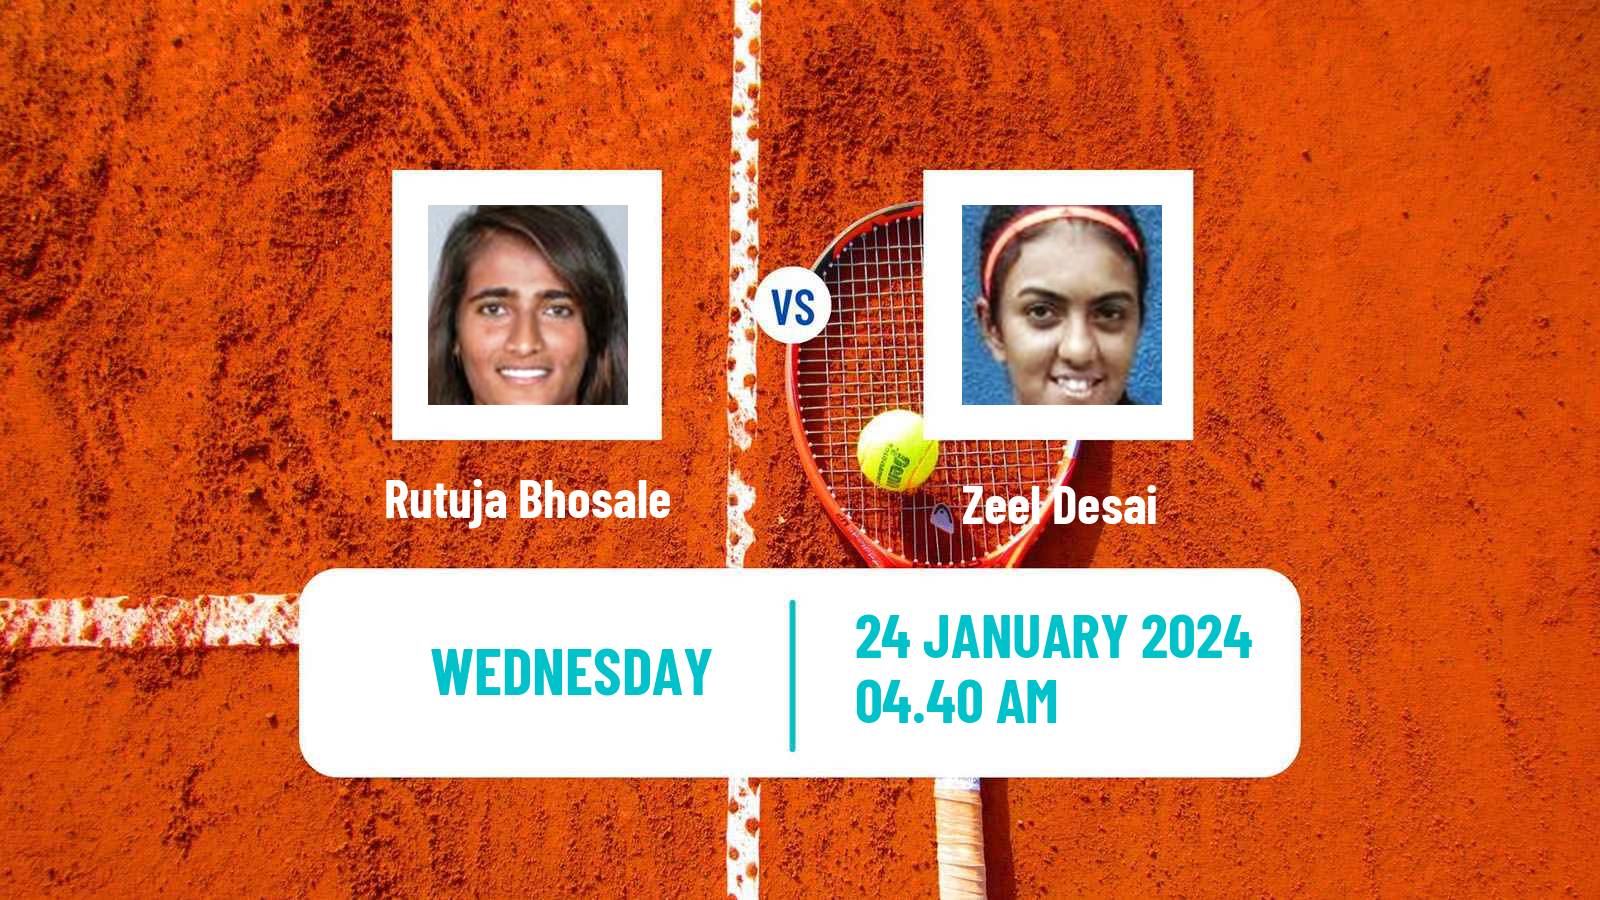 Tennis ITF W50 Pune Women Rutuja Bhosale - Zeel Desai